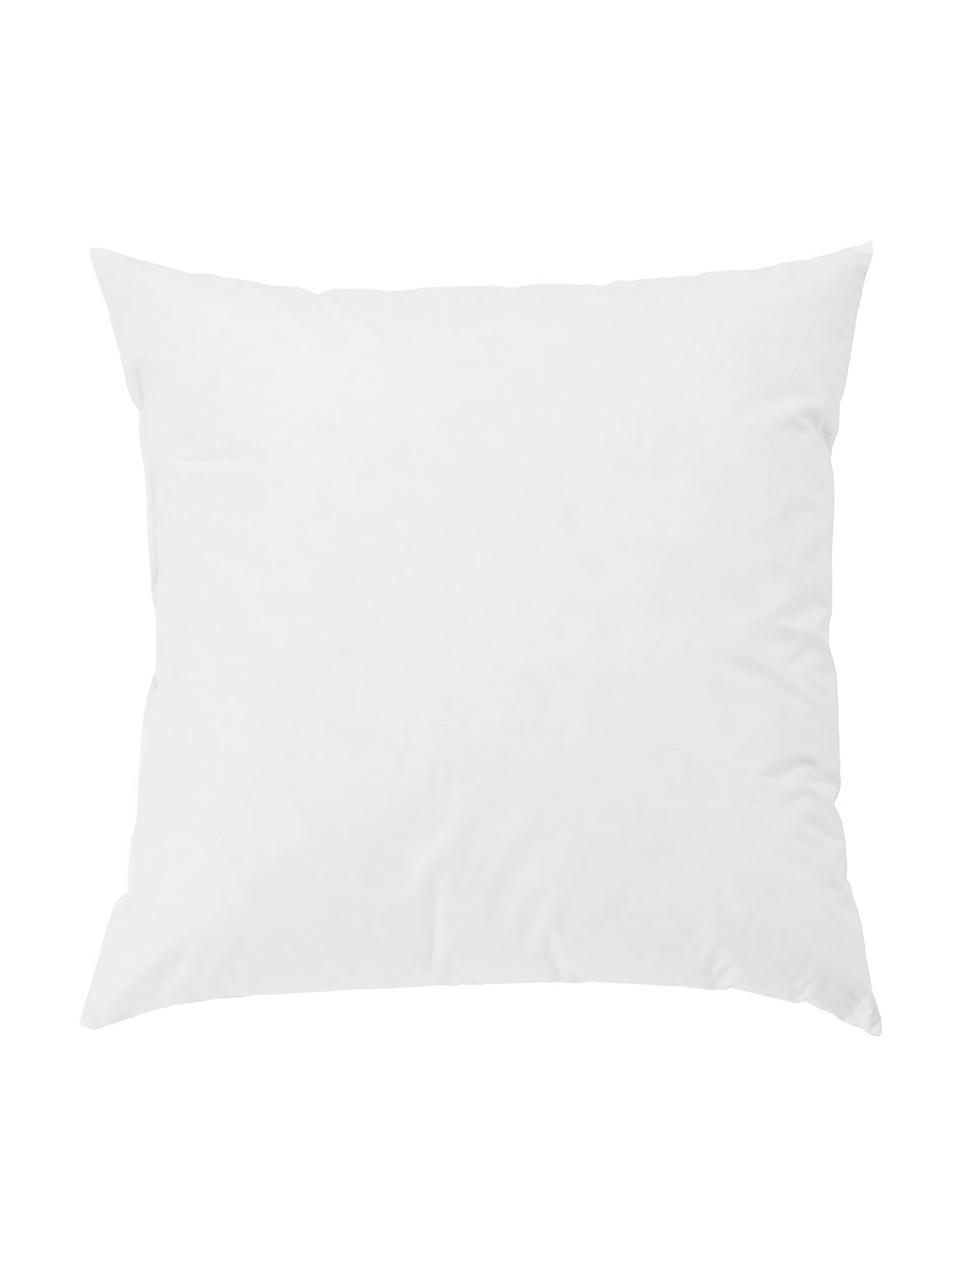 Wypełnienie poduszki dekoracyjnej Premium, 40 x 40, Biały, S 40 x D 40 cm